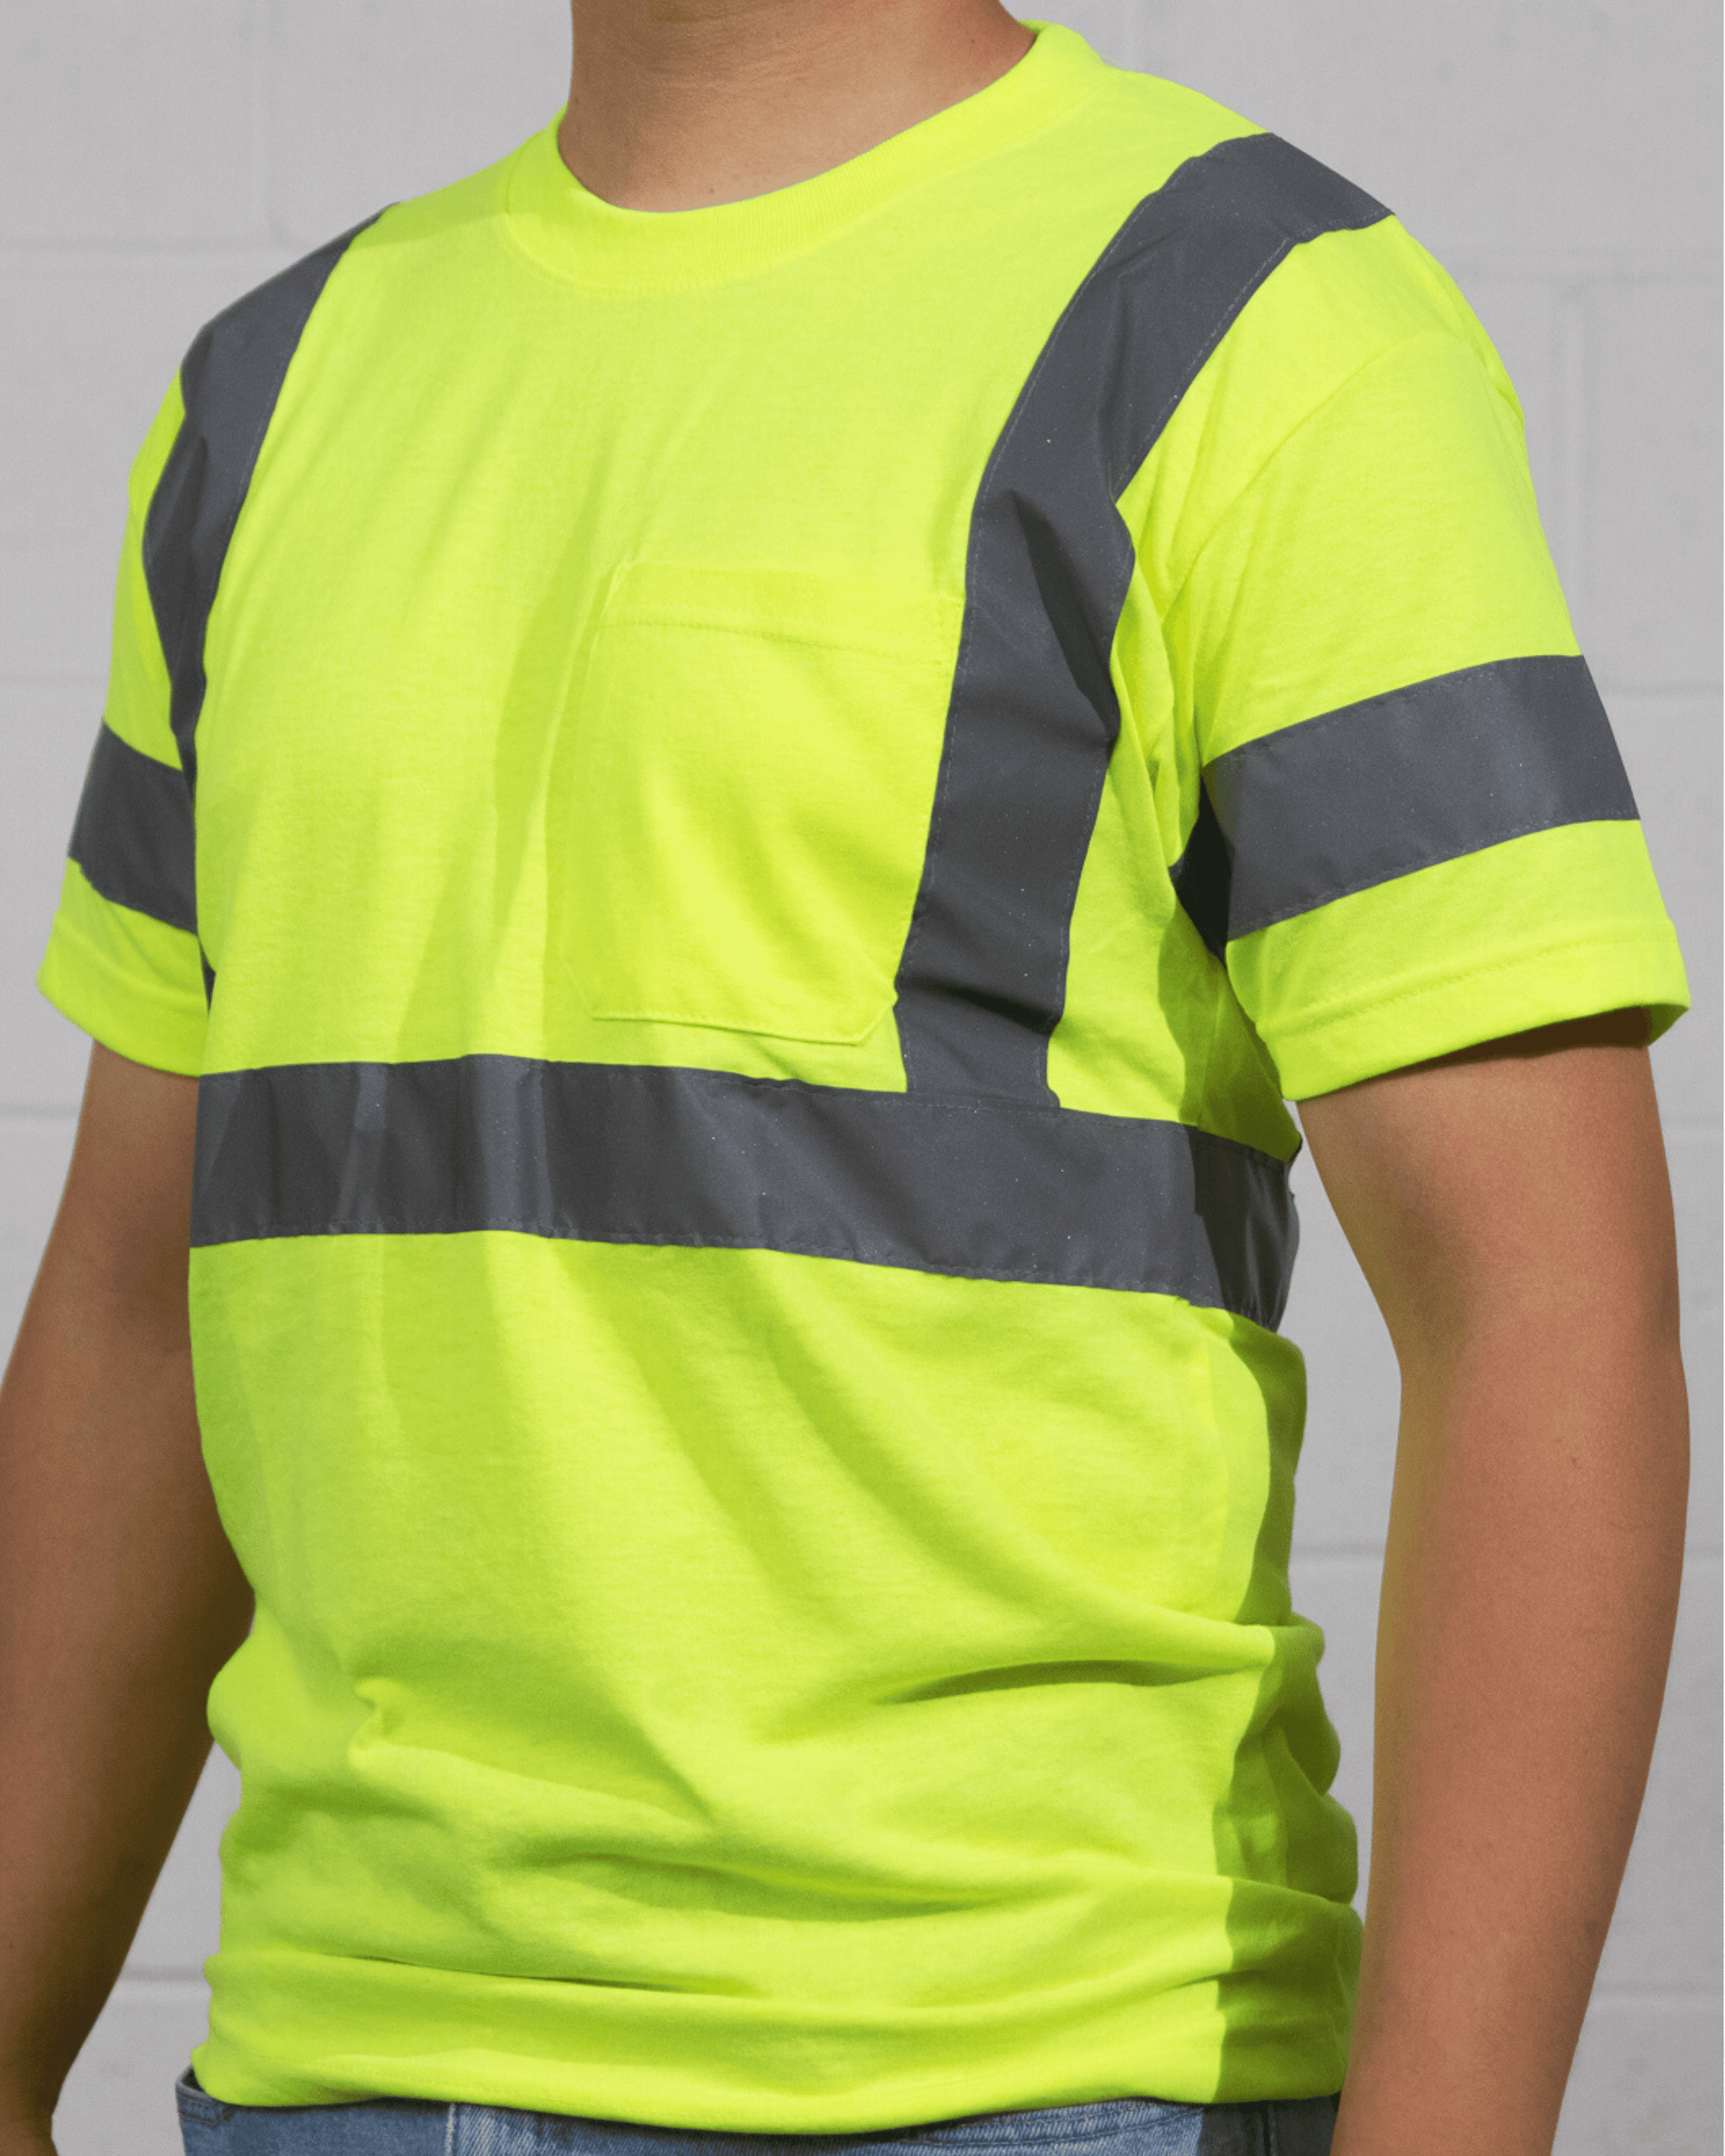 A man wearing Suna Cotton® Safety Green Reflective T-shirt